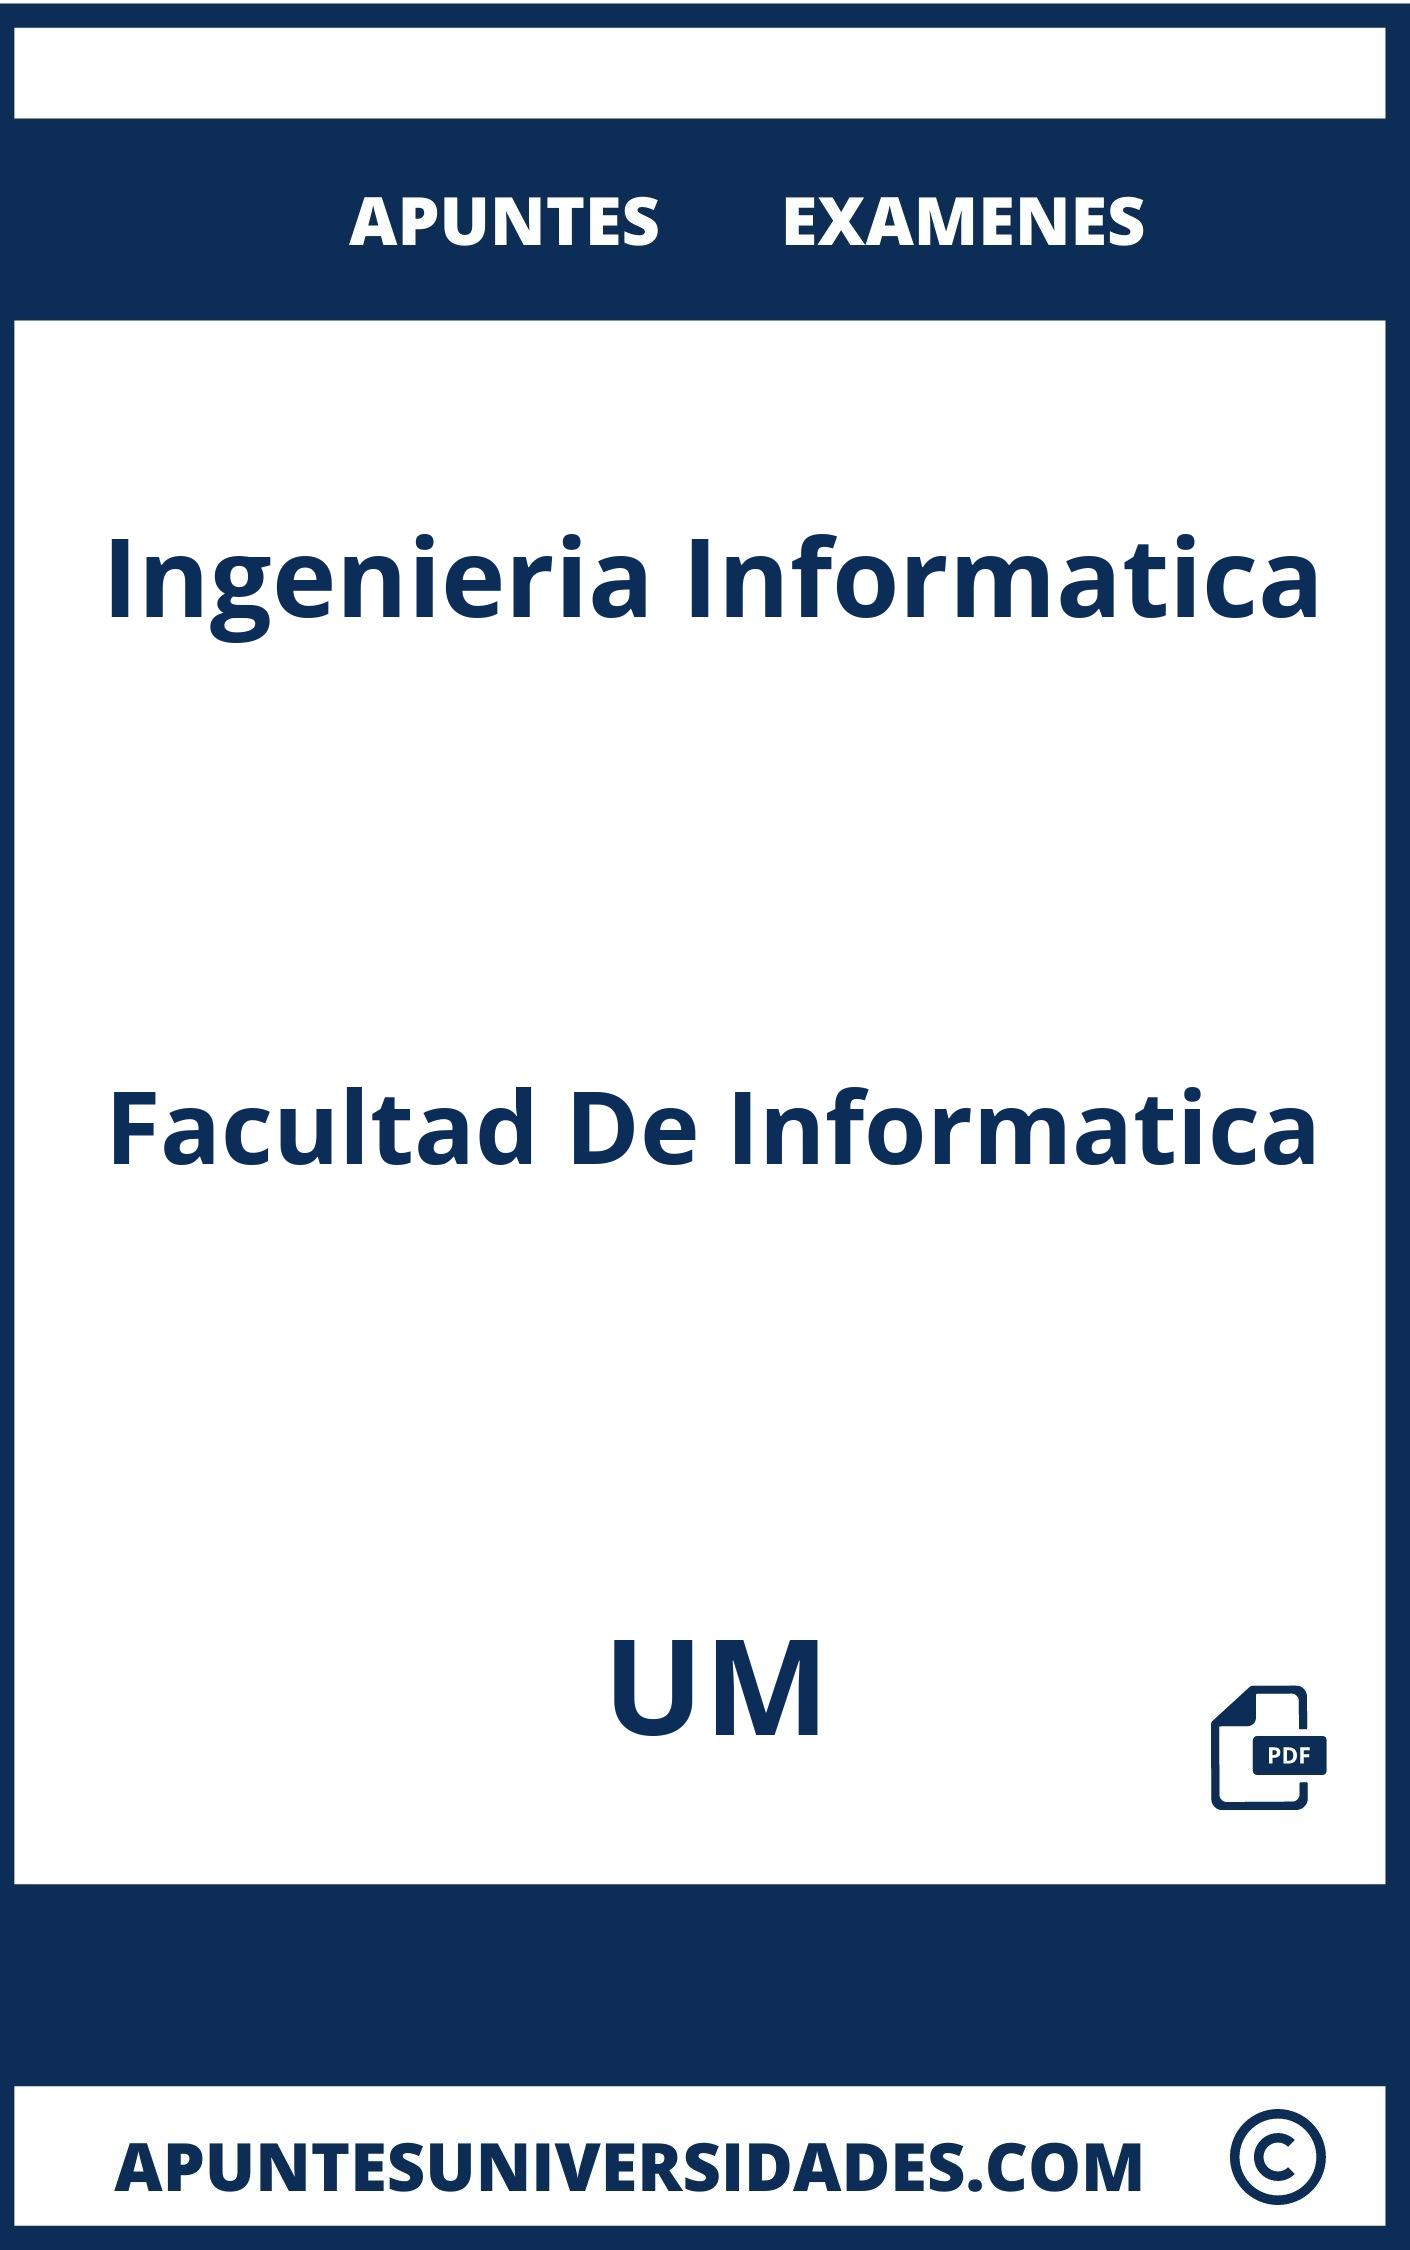 Apuntes y Examenes Ingenieria Informatica UM